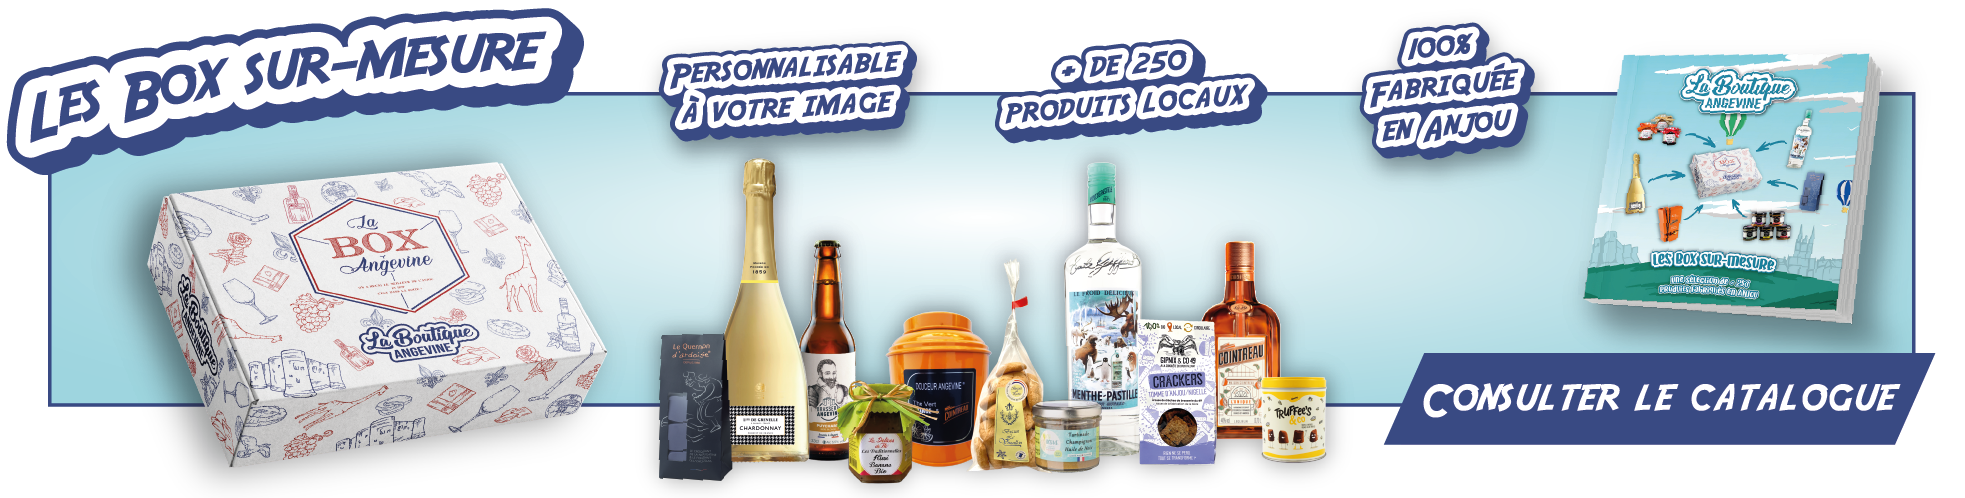 La Box Angevine - Coffret gourmand - Panier garni - Cadeau entreprise - Box de produits locaux